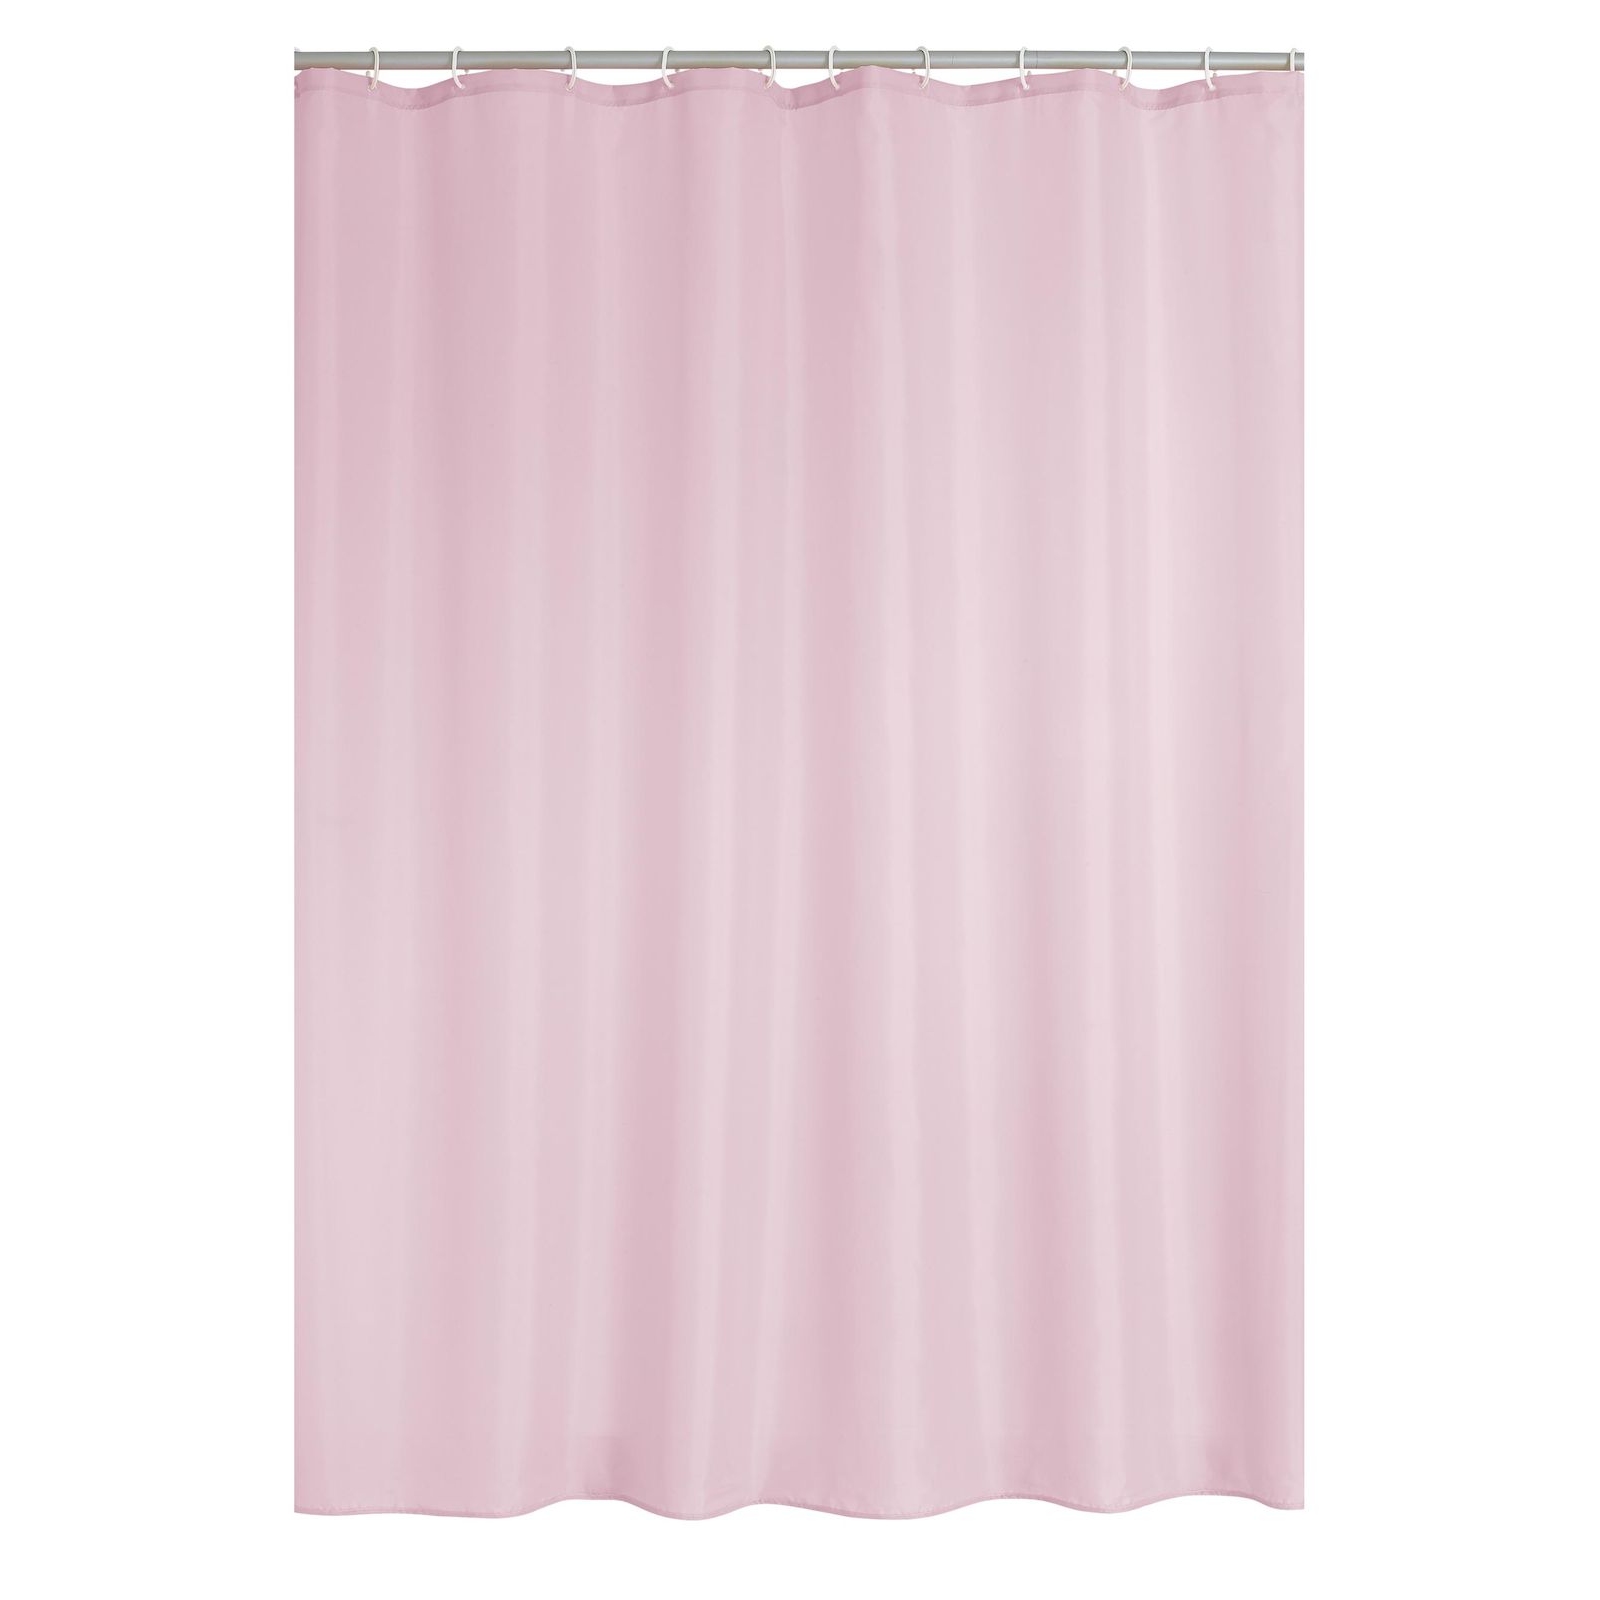 Штора для ванной Ridder Madison розовая 200х180 см штора для ванной ridder alice разноцветная 200х180 см